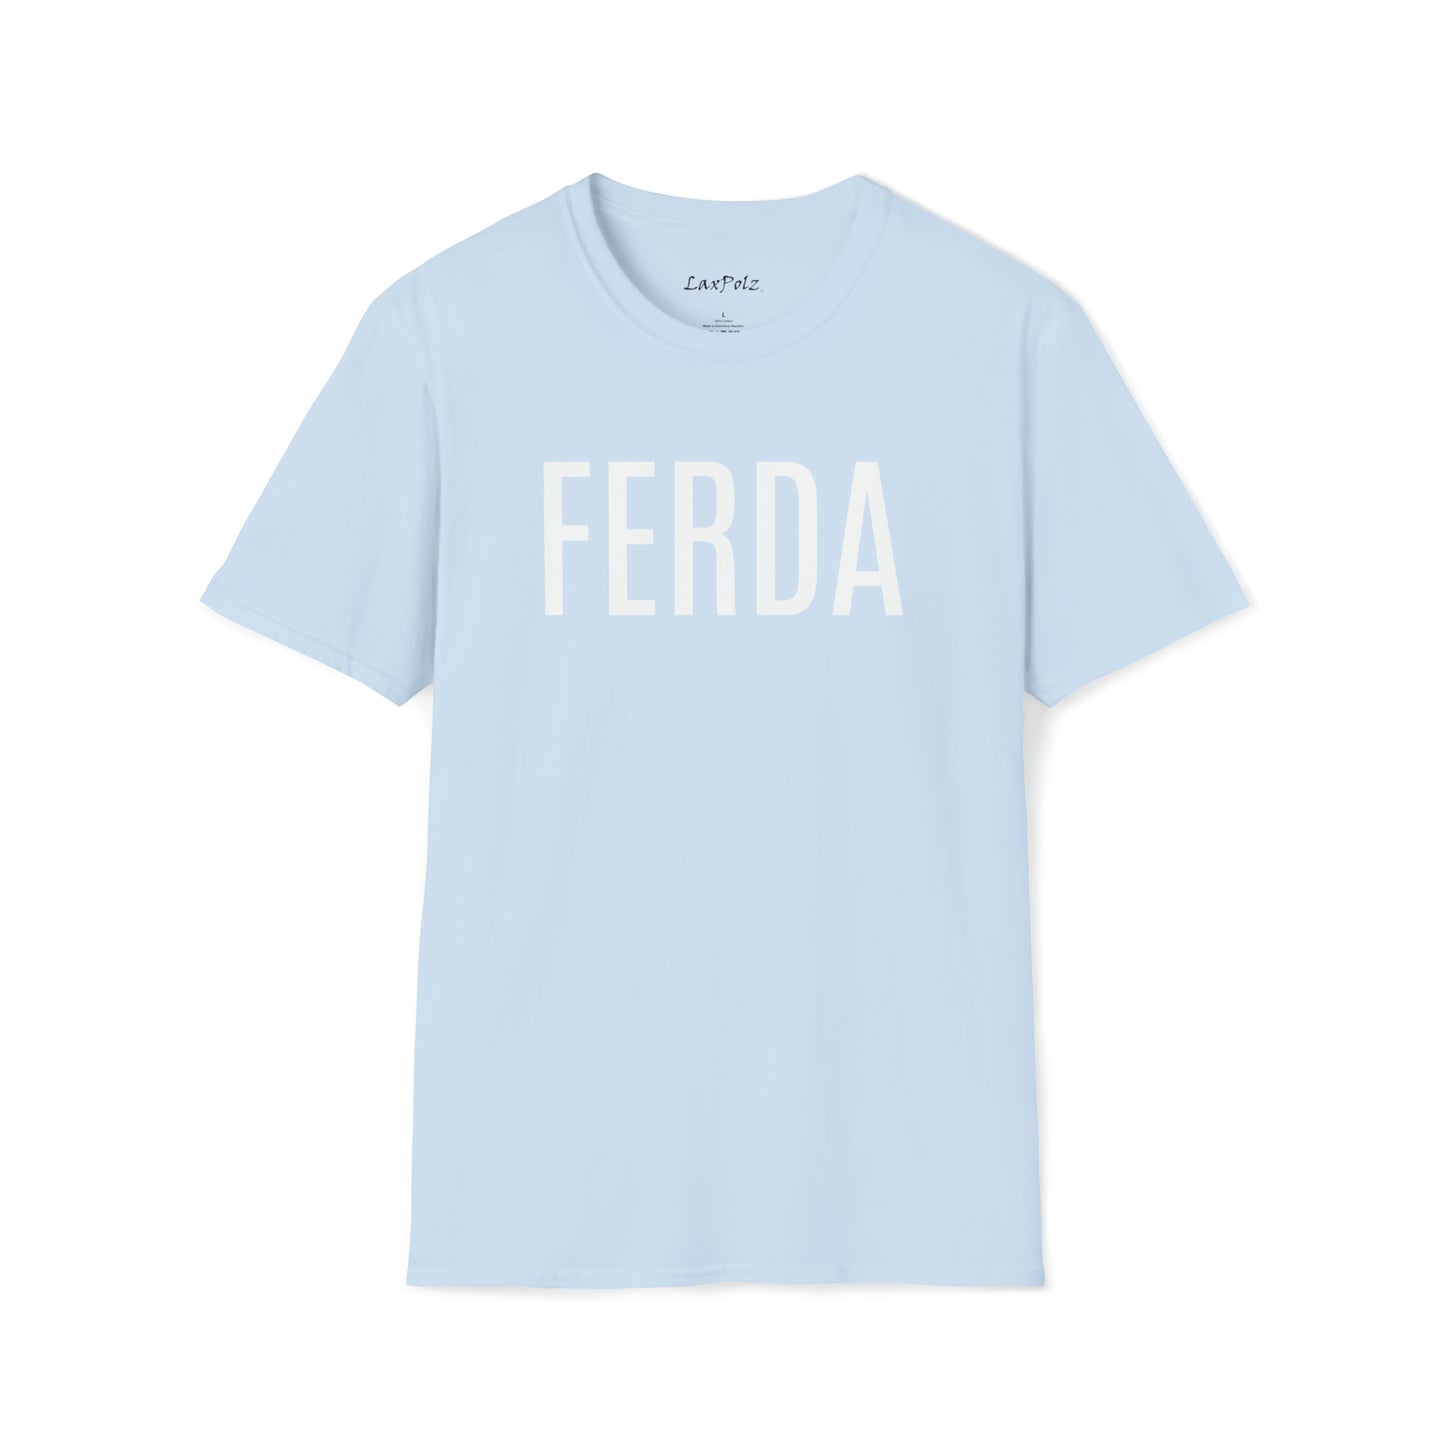 FERDA Softstyle Tee